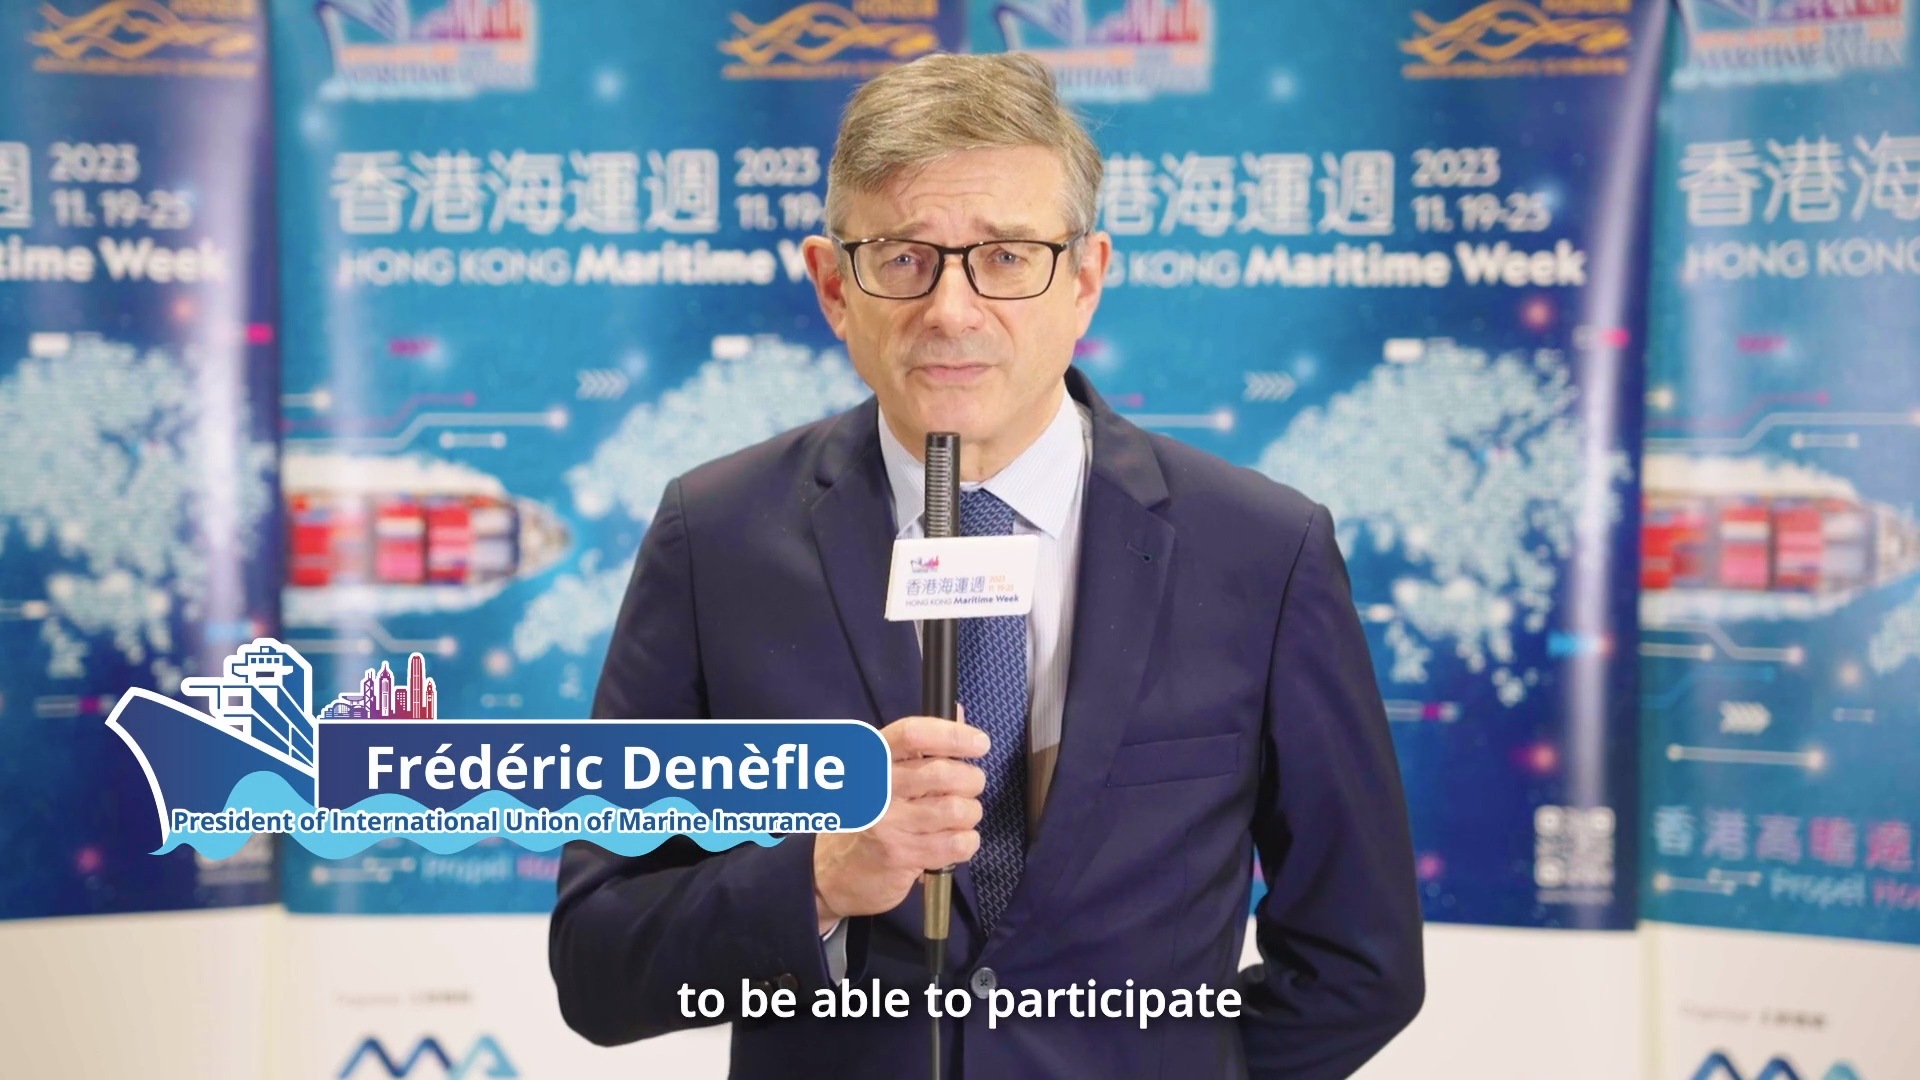 香港海運週2023 - 國際航運保險聯盟主席Frédéric Denèfle先生 (只有英文)